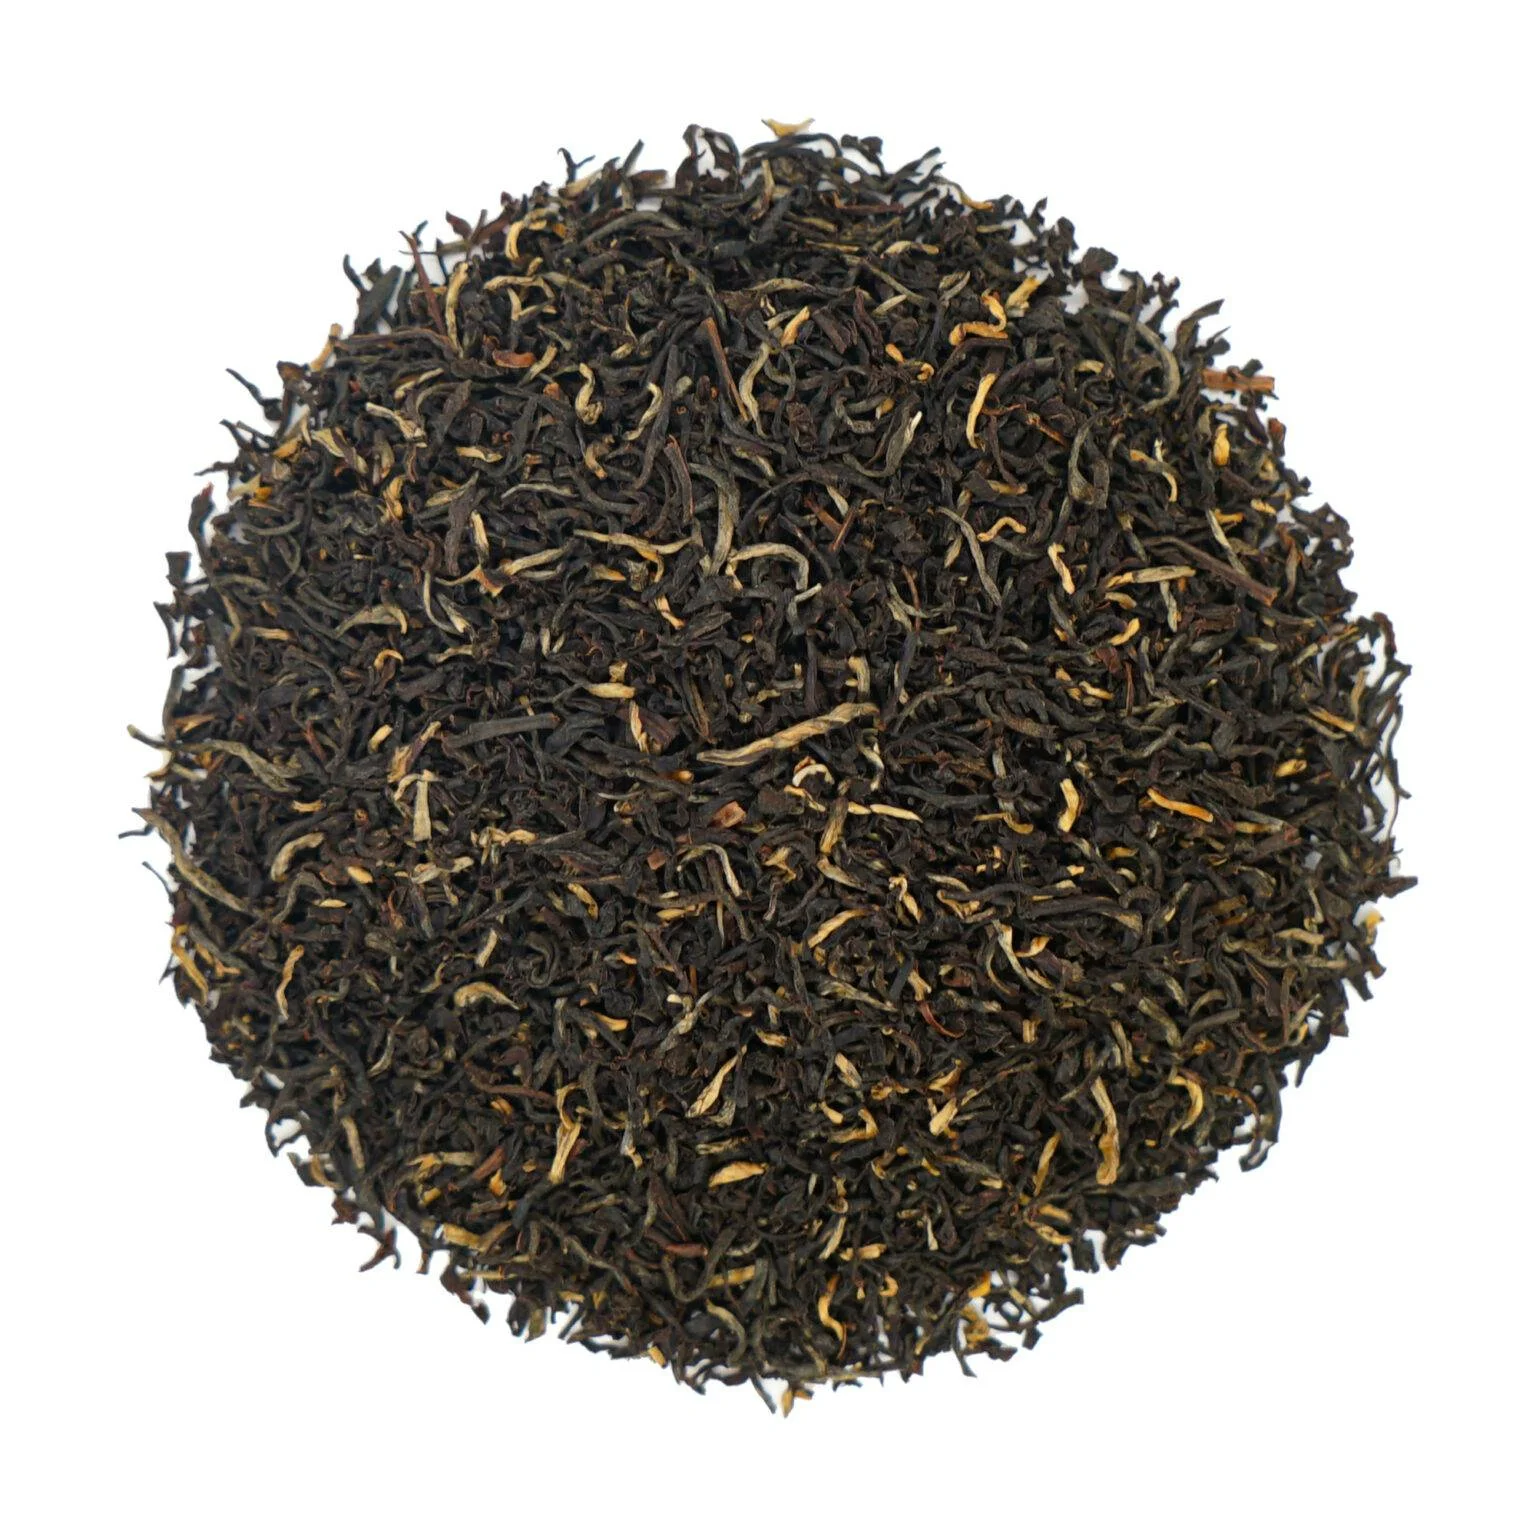 Herbata Assam Satrupa: Intensywny smak korzeni i drzewności